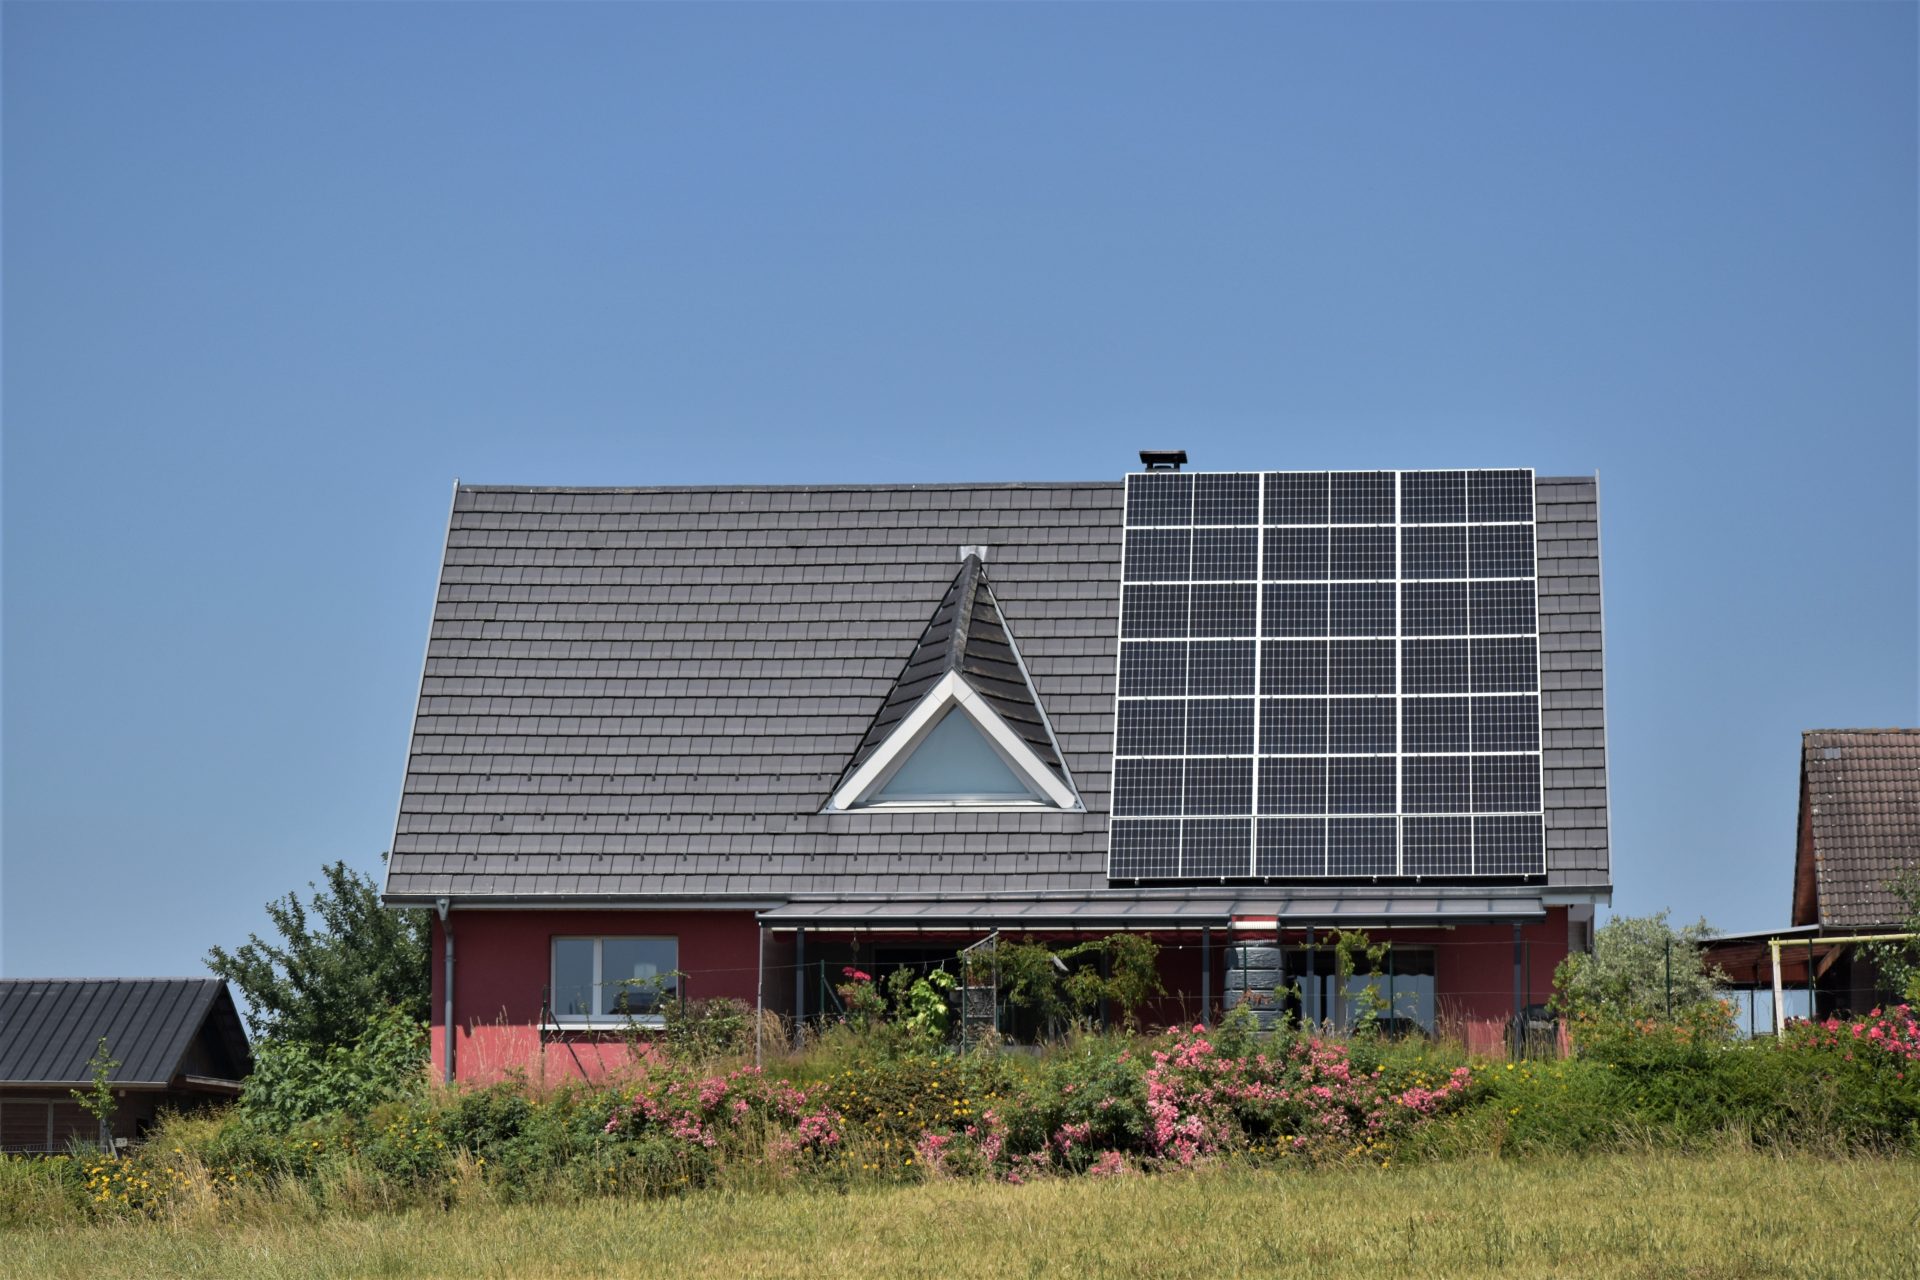 La mitad del tejado inclinado de una casa unifamiliar está cubierta con paneles solares.